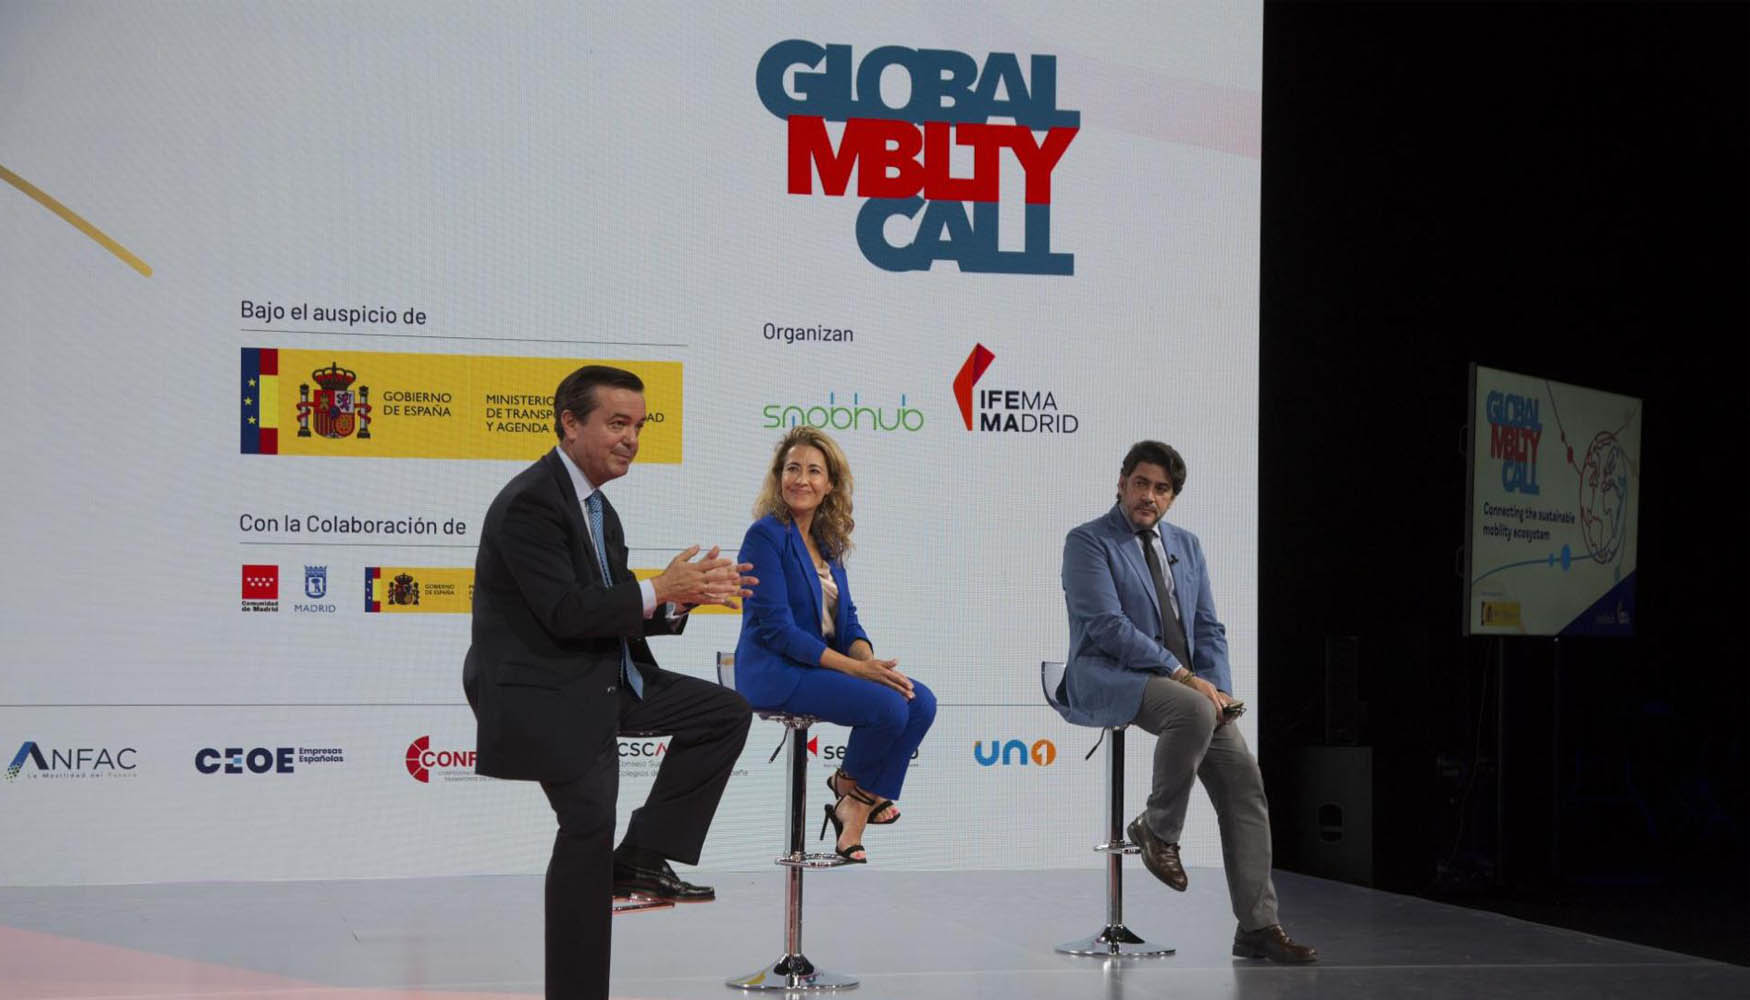 De izquierda a derecha, Eduardo Lpez-Puertas, director general de Ifema Madrid; Raquel Snchez, ministra de Transportes, Movilidad y Agenda Urbana...